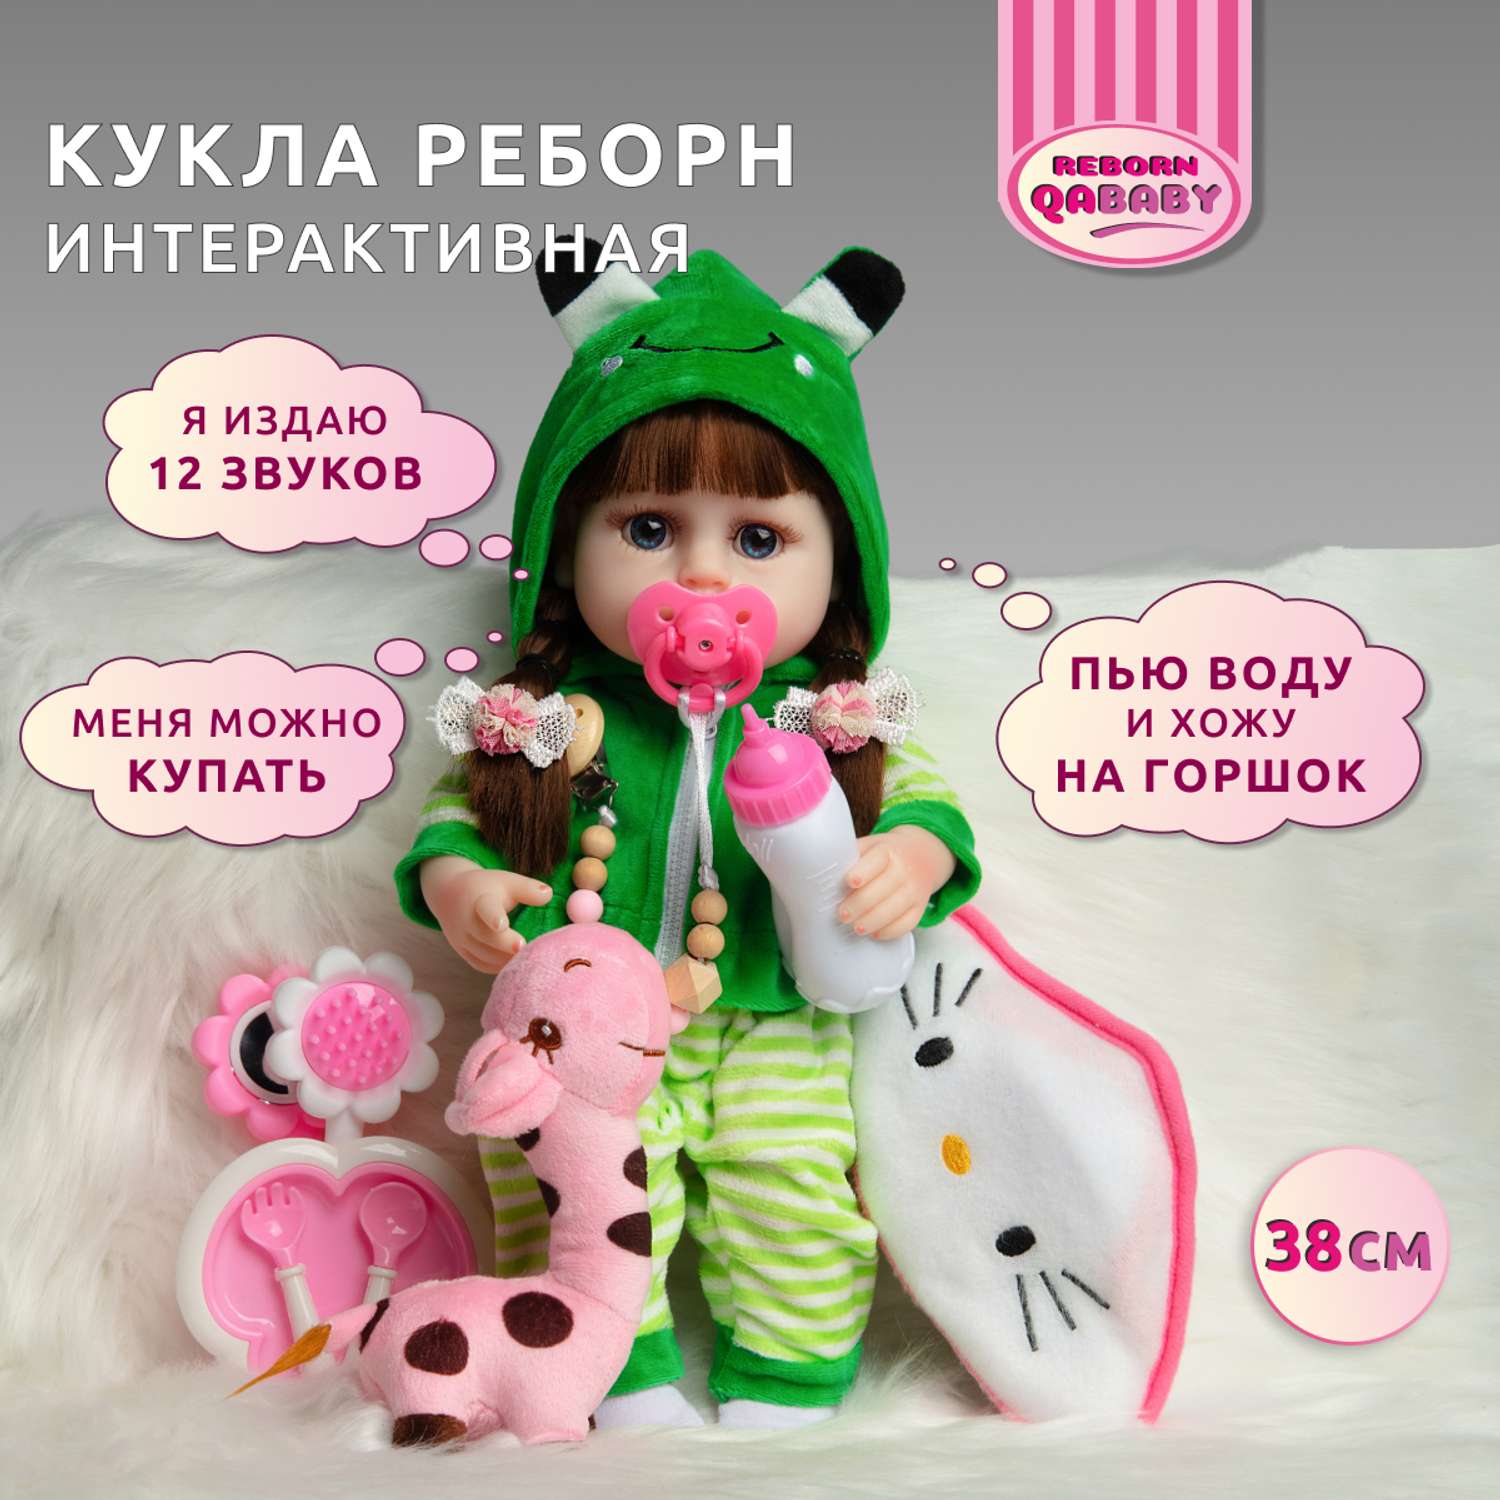 Кукла Реборн QA BABY девочка Марьяна интерактивная силиконовая Пупс Reborn 38 см 3802 - фото 1